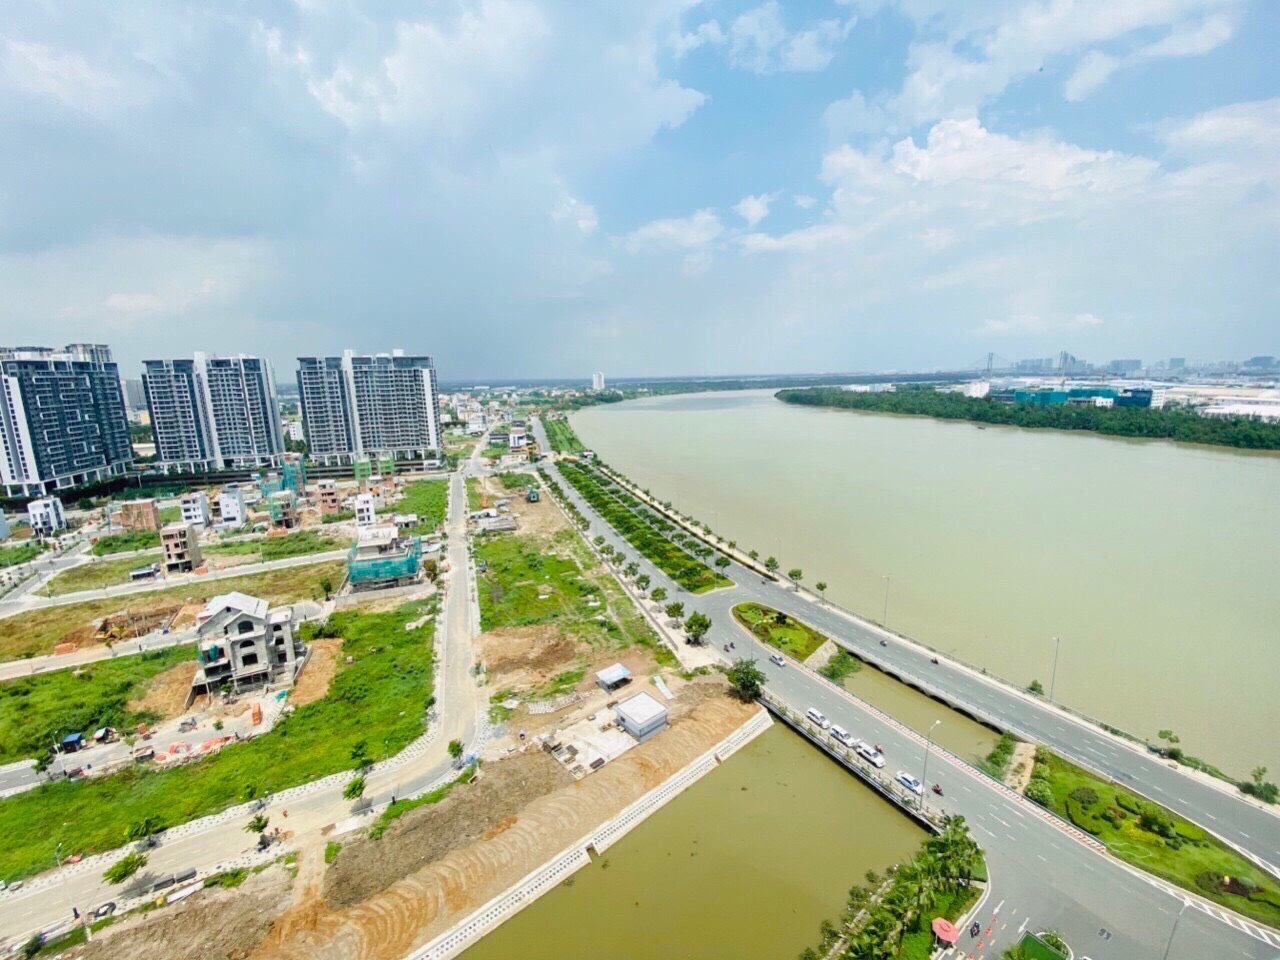 Cần Bán nền đất Biệt Thự trong khu Saigon Mystery Villas với 2 mặt giáp Sông, 14x20m, P. Thạnh Mỹ Lợi Q,2, 35 tỷ